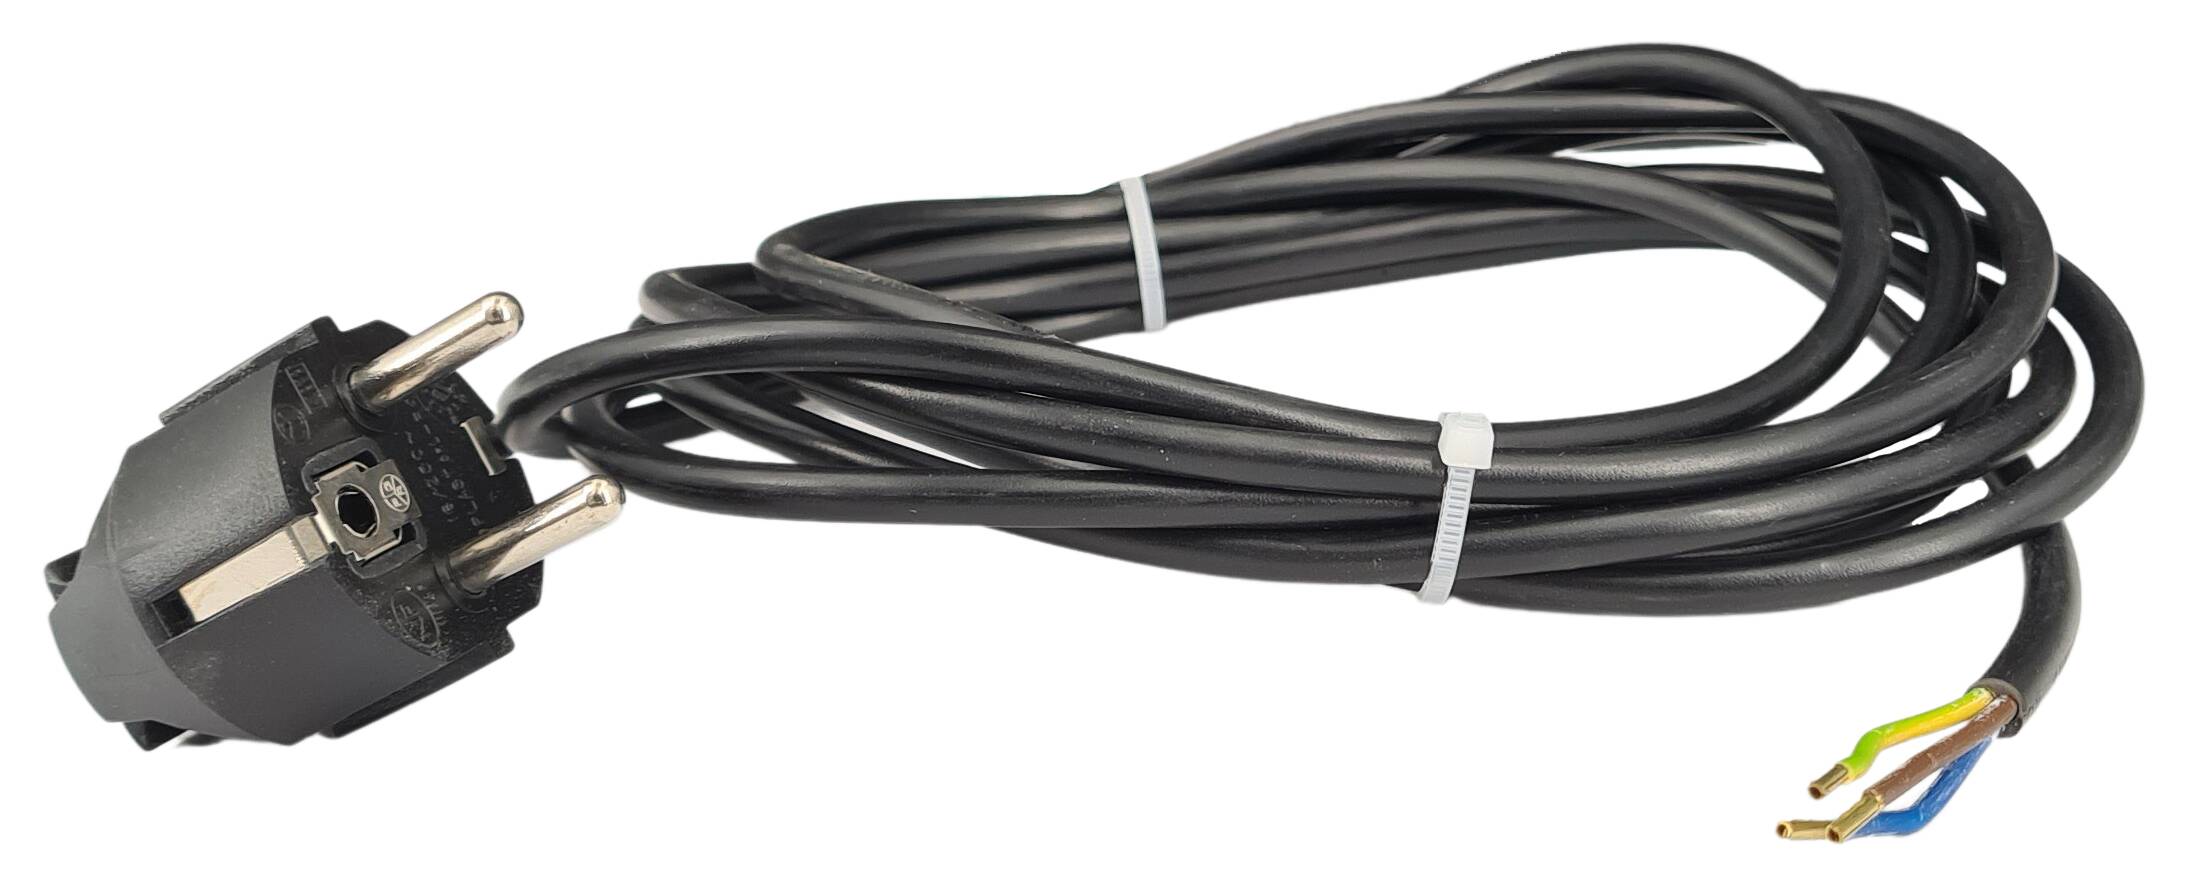 cord-set 3G 0,75/1500 with schuko angled plug black